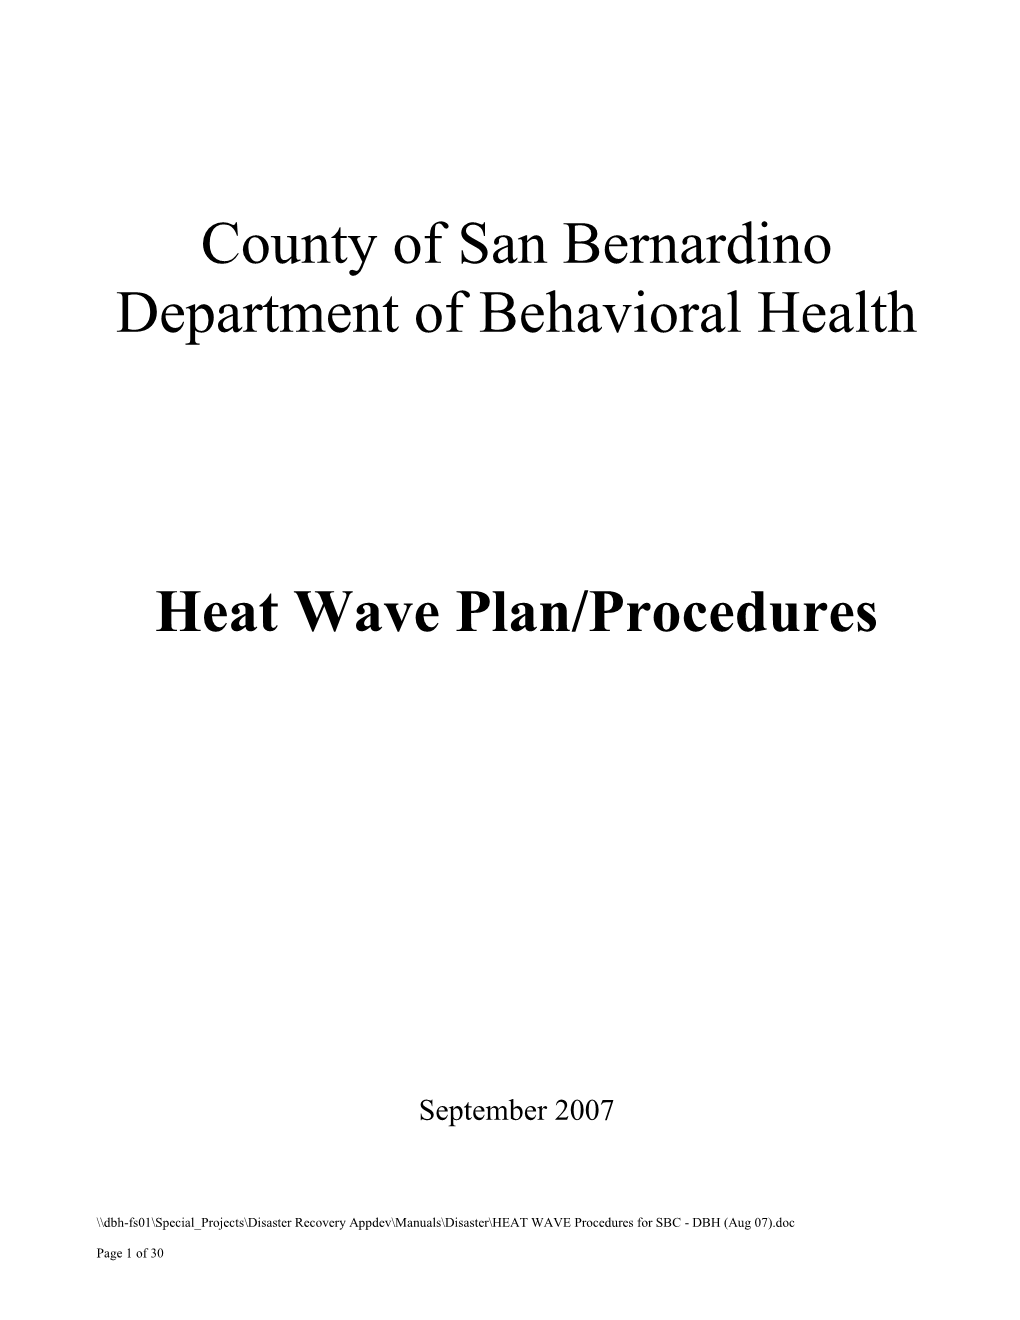 Heat Wave Procedures for San Bernardino